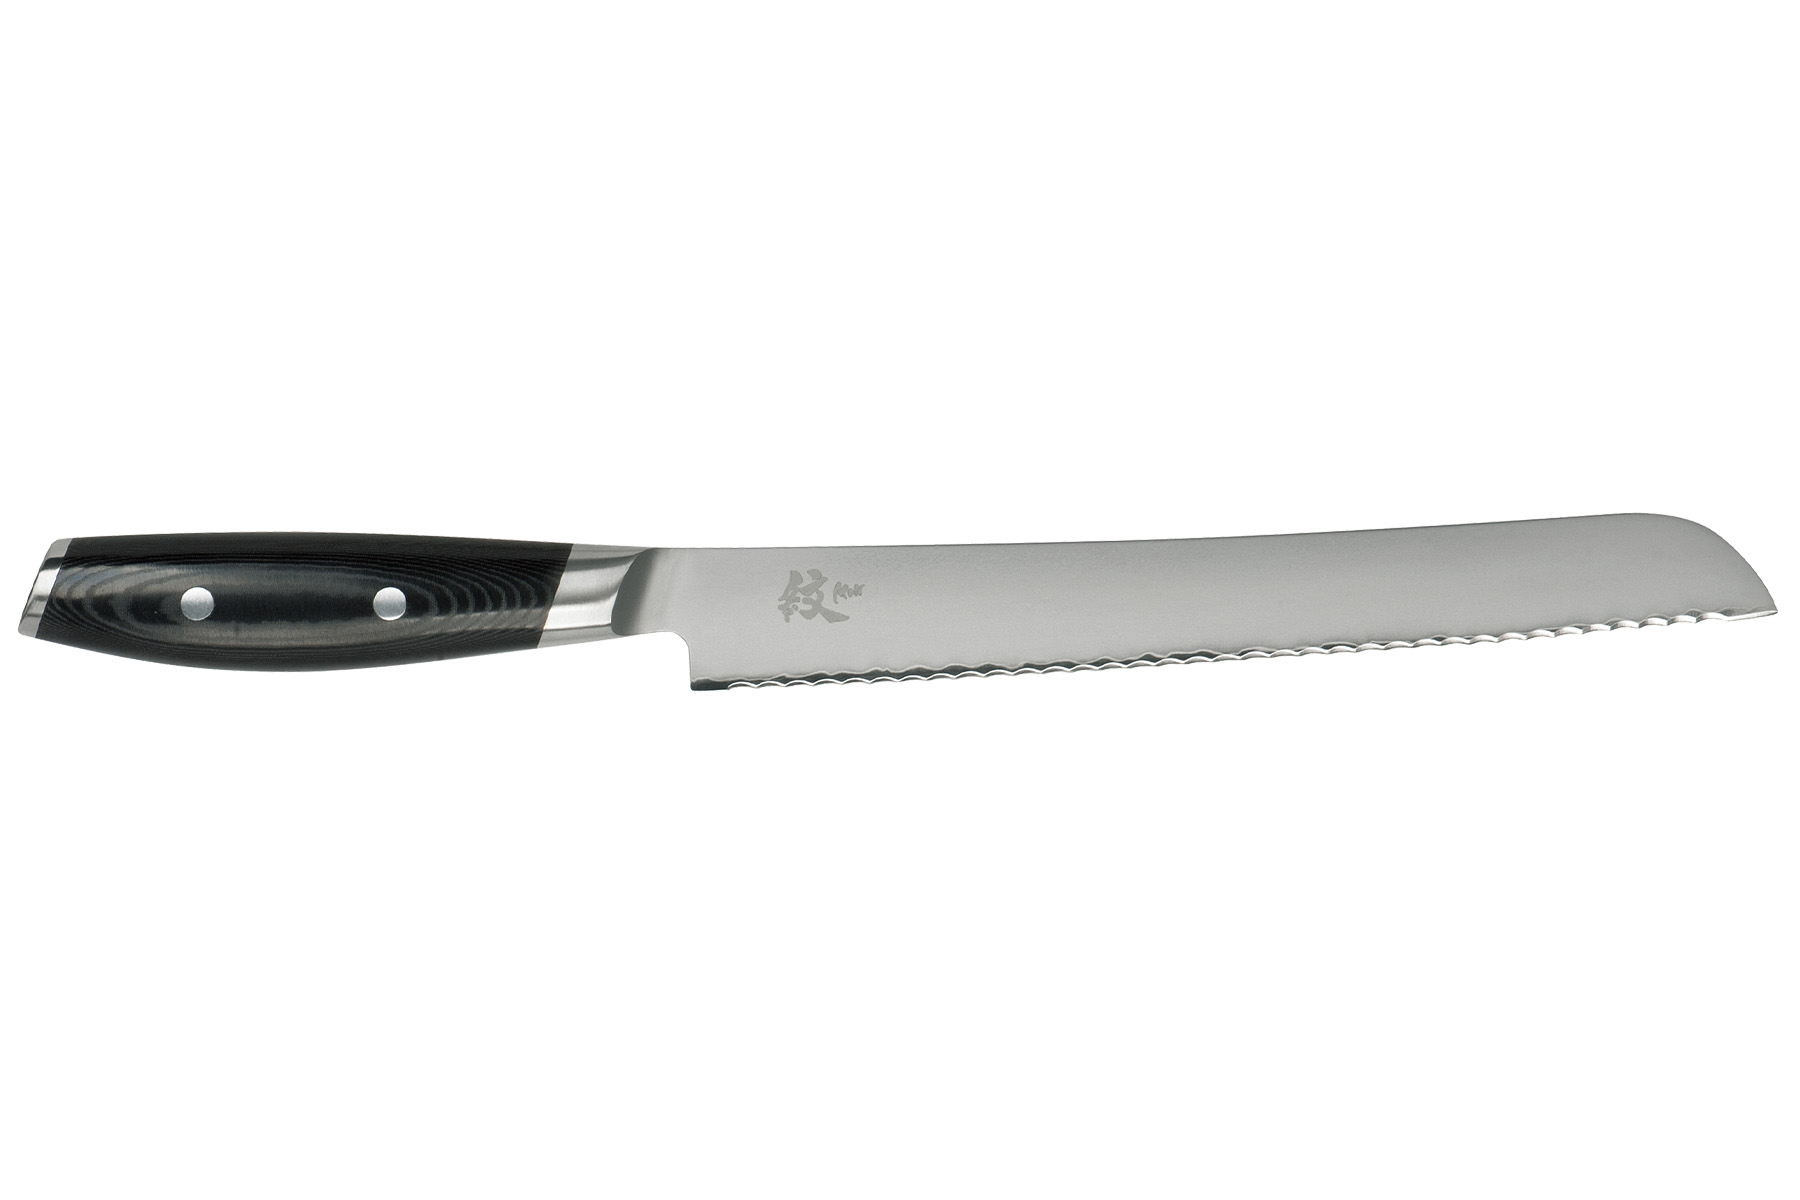 Couteau japonais Yaxell Mon - Couteau à pain 23 cm